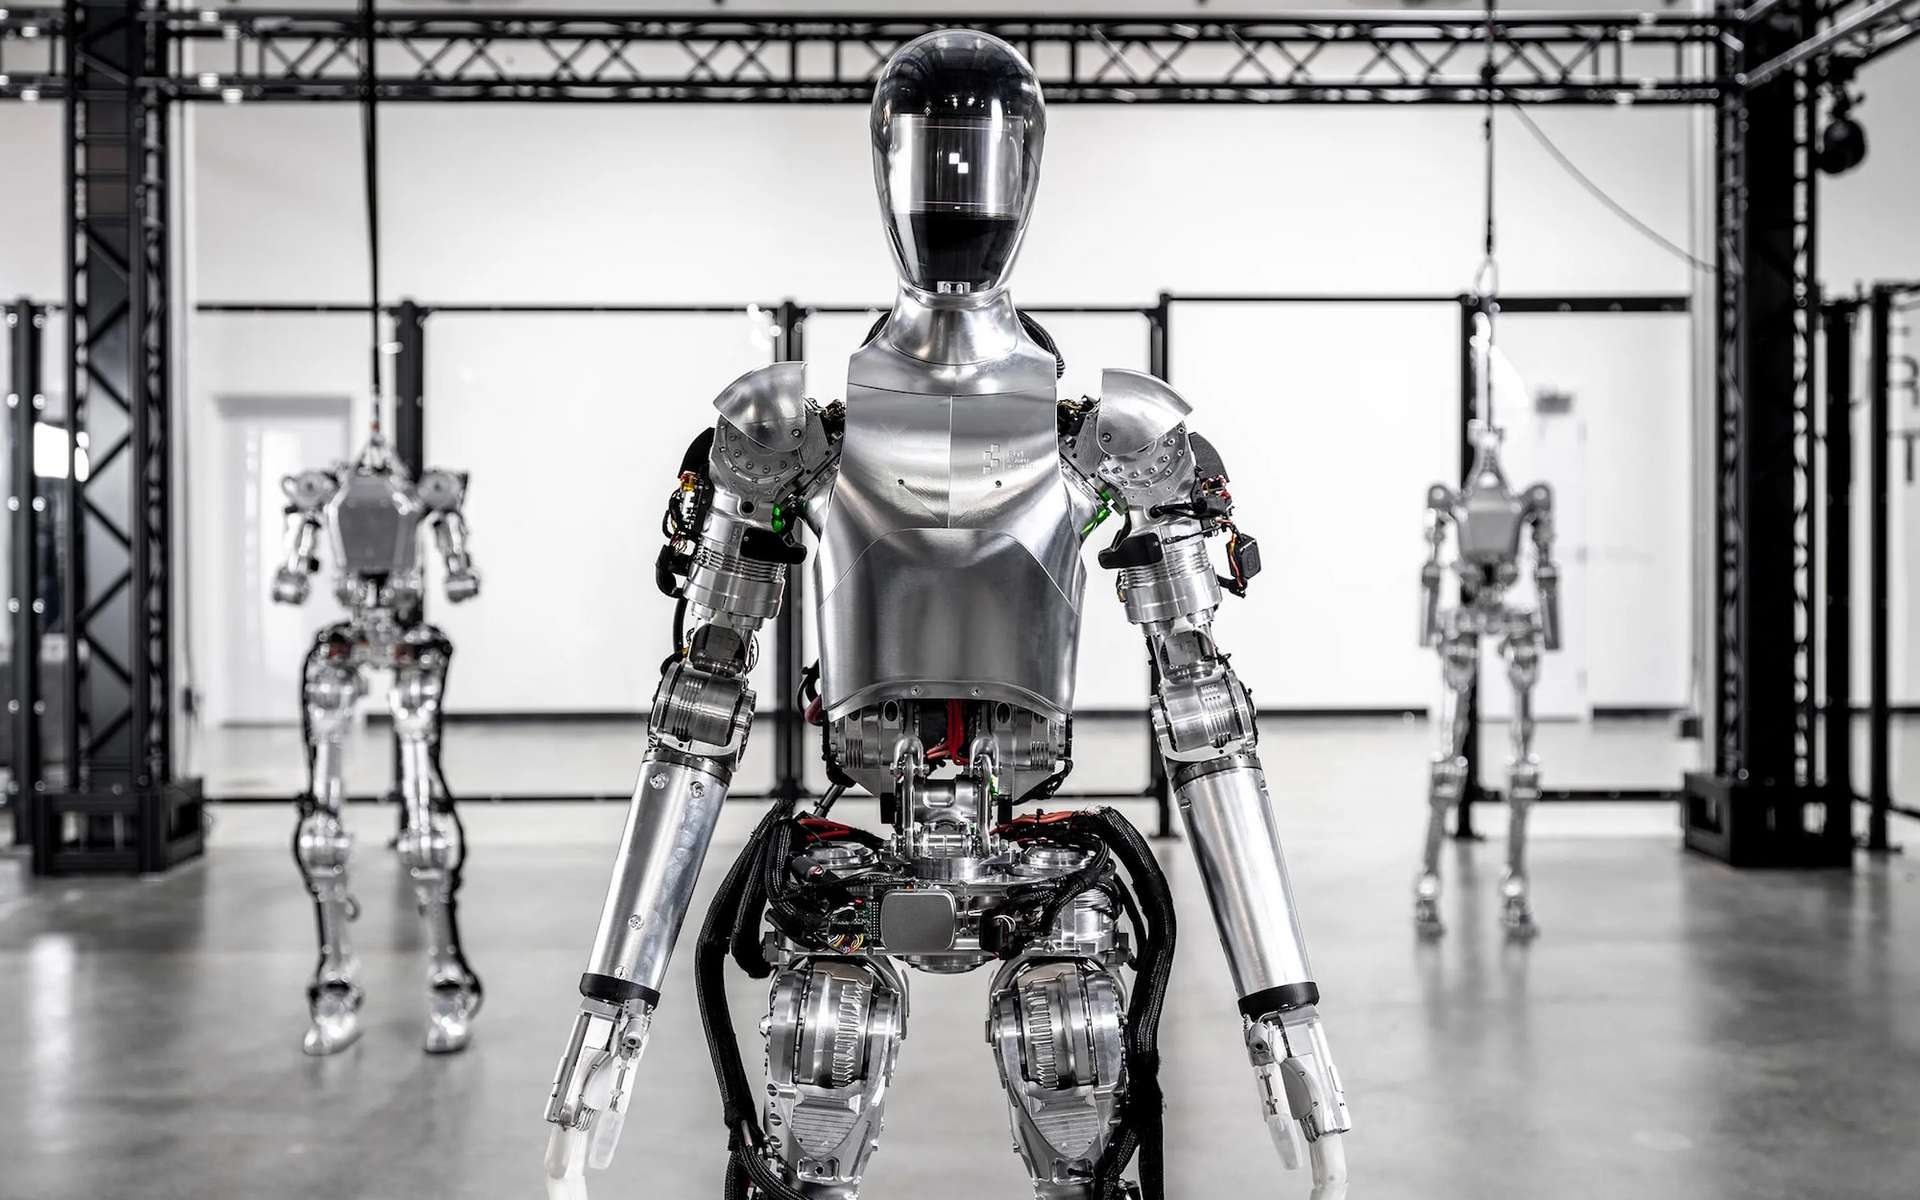 Vision à 360 °, marche autonome : ce robot humanoïde impressionne après seulement un an de développement